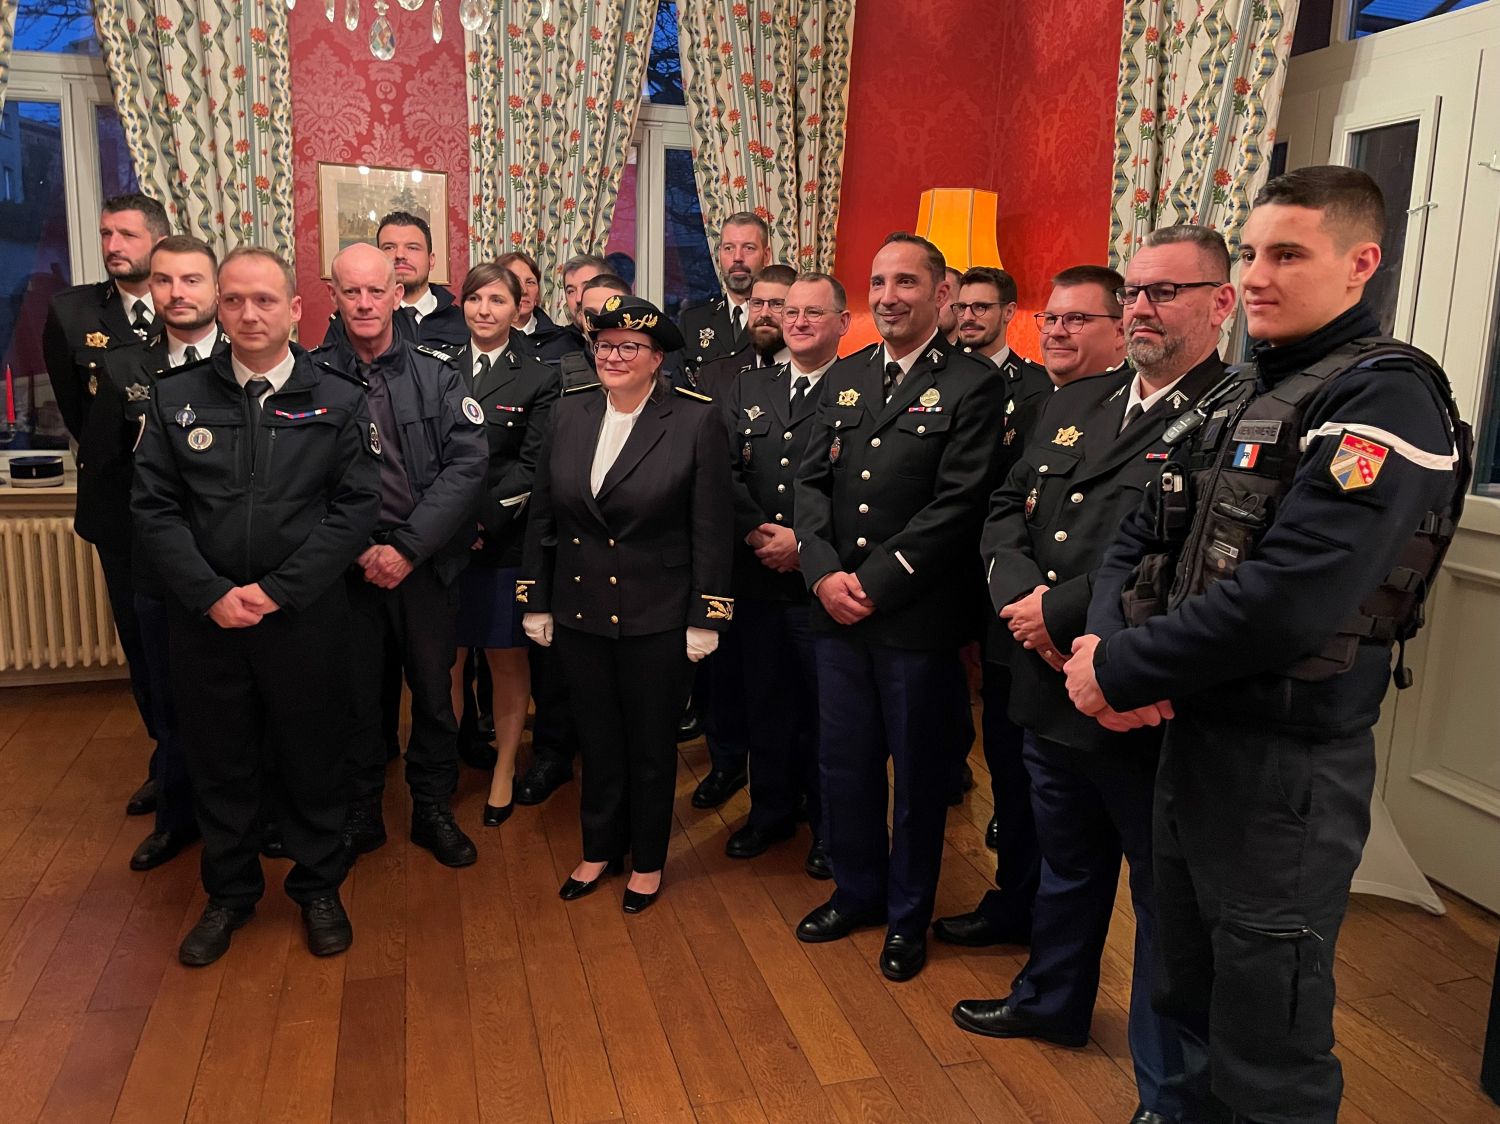 17 gendarmes et policiers à l'honneur après avoir démantelé un trafic de stupéfiants 